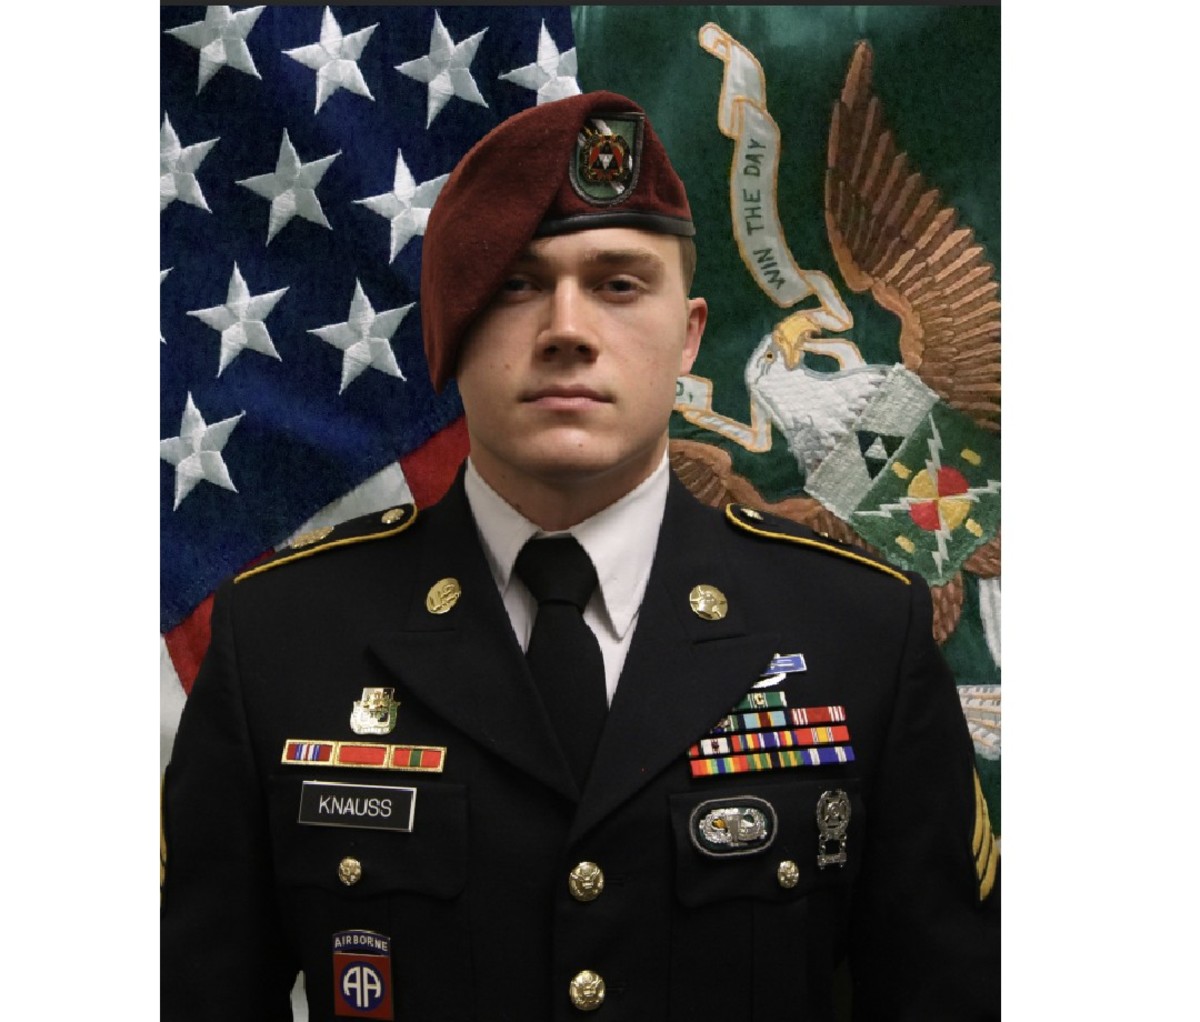 Staff Sergeant Ryan C. Knauss, U.S. Army